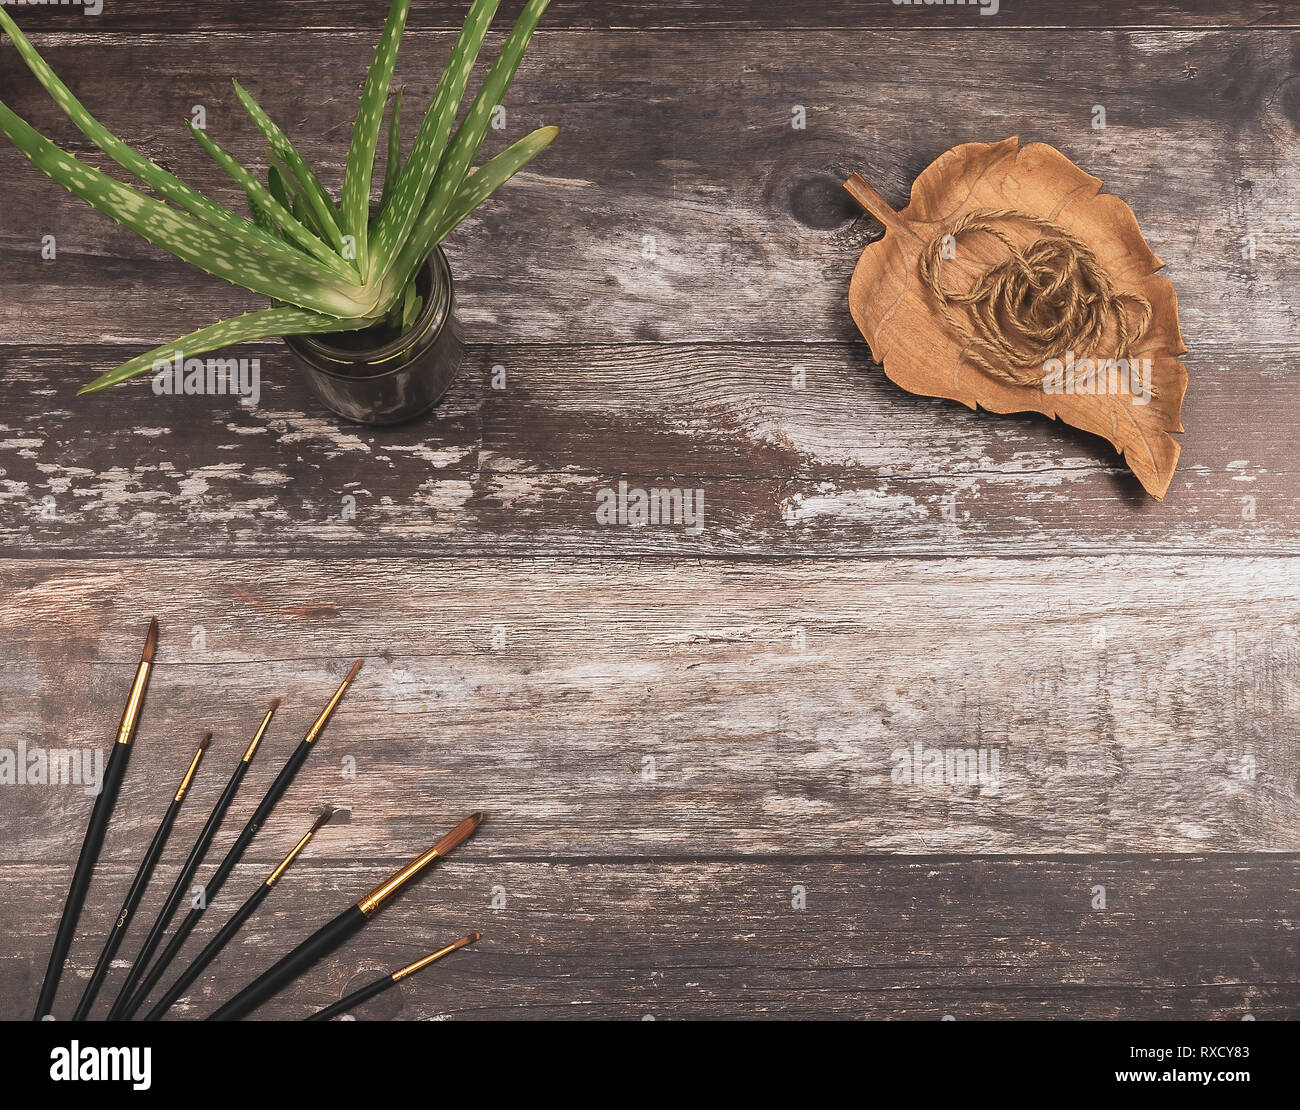 Blick von oben auf die Pinsel, natürliche Garn und einem grünen Aloe Vera Pflanze auf rustikalem Holz Hintergrund mit Copyspace - Begriff der künstlerischen kreativen Grafiken Stockfoto